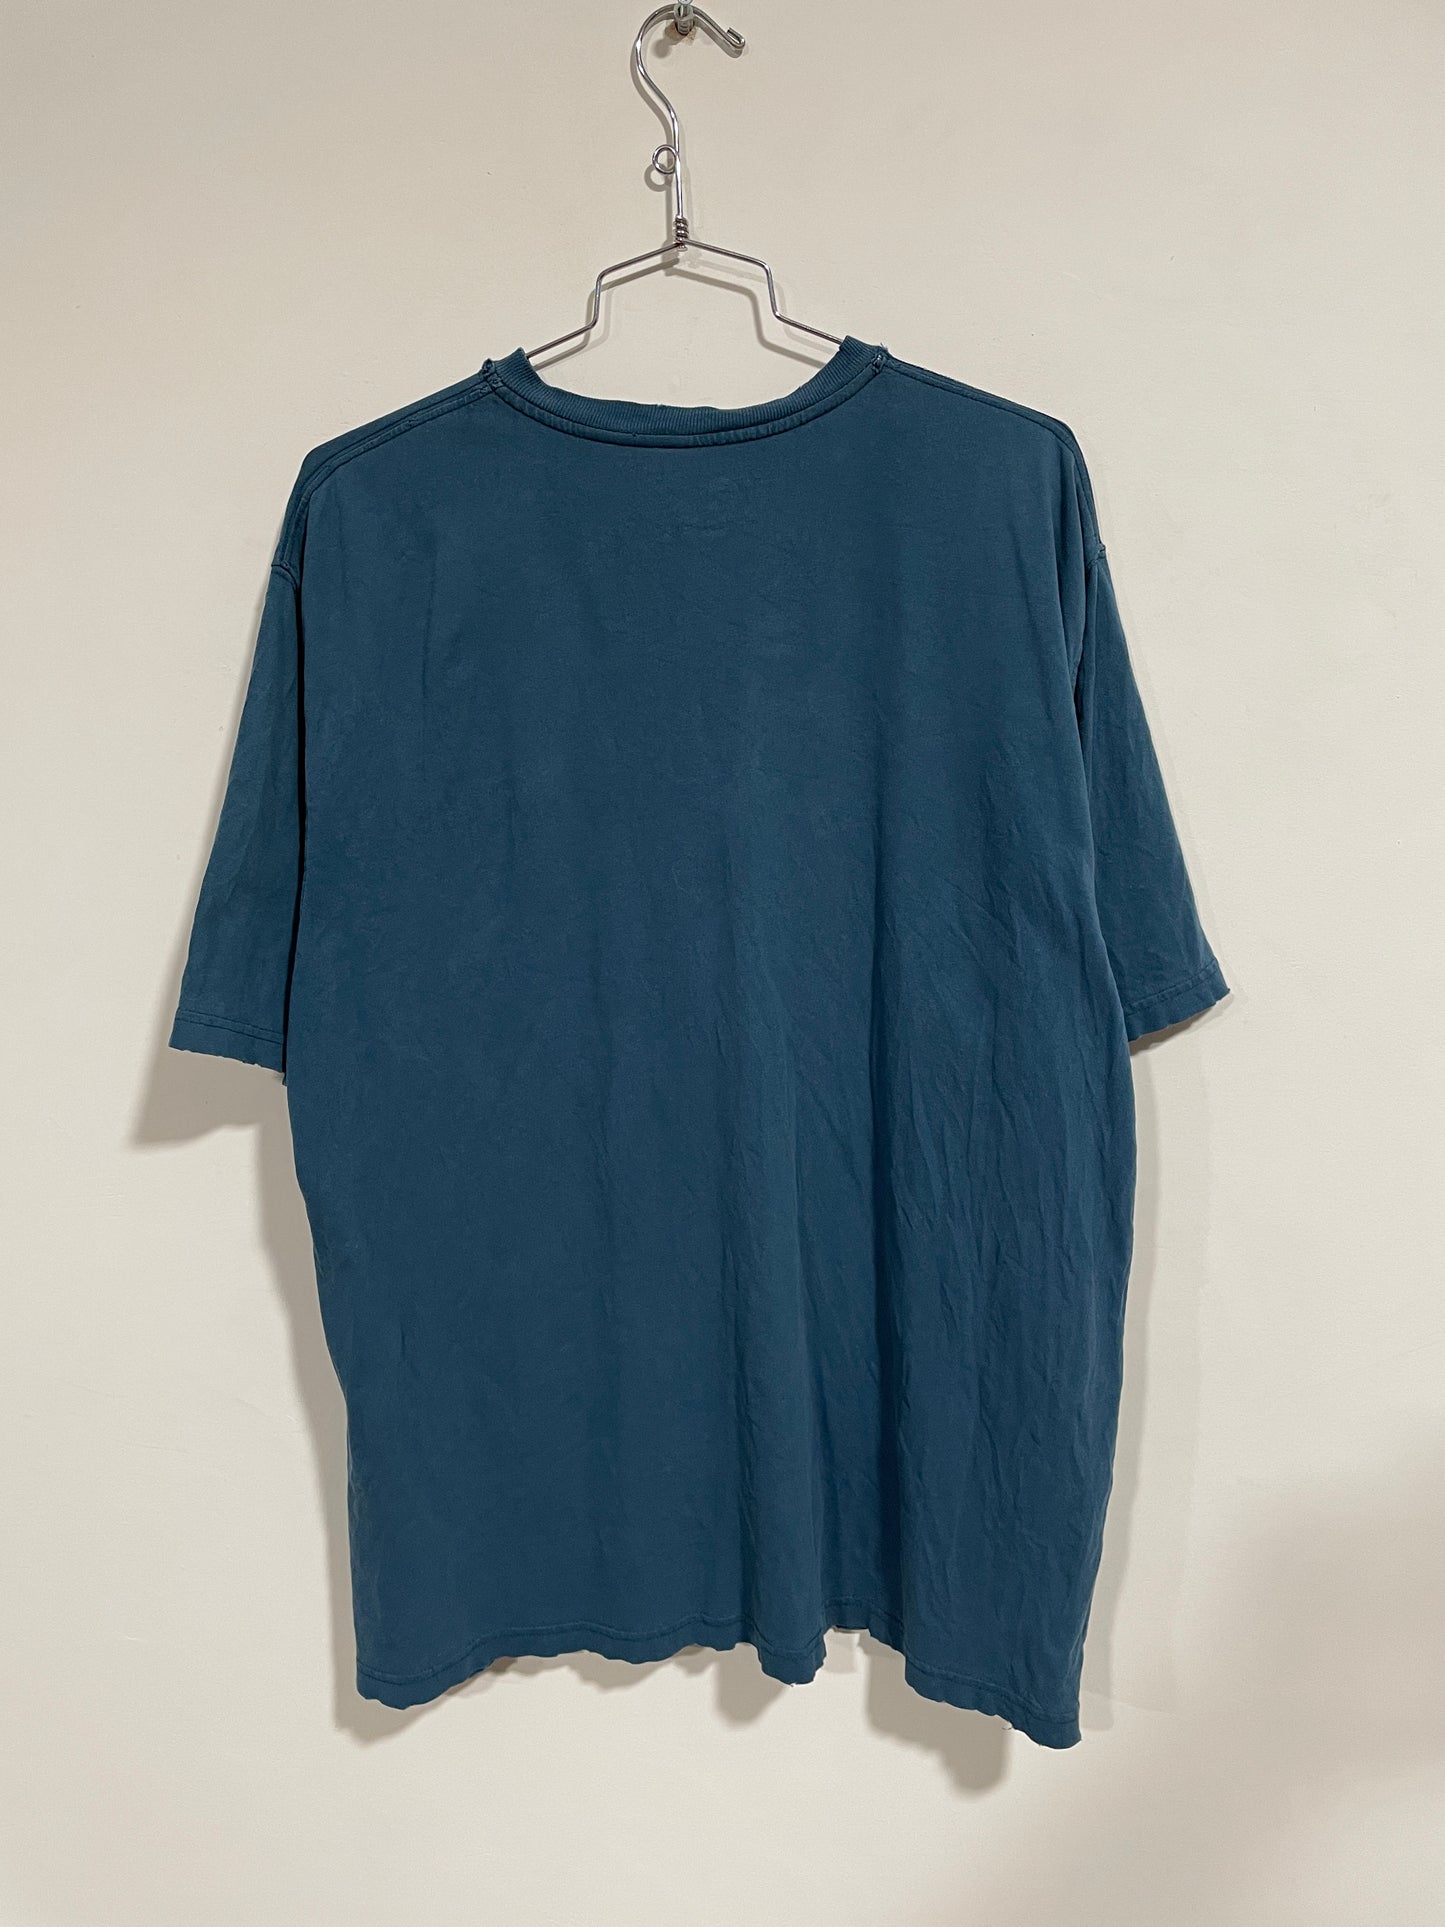 T shirt Carhartt USA (MR018)